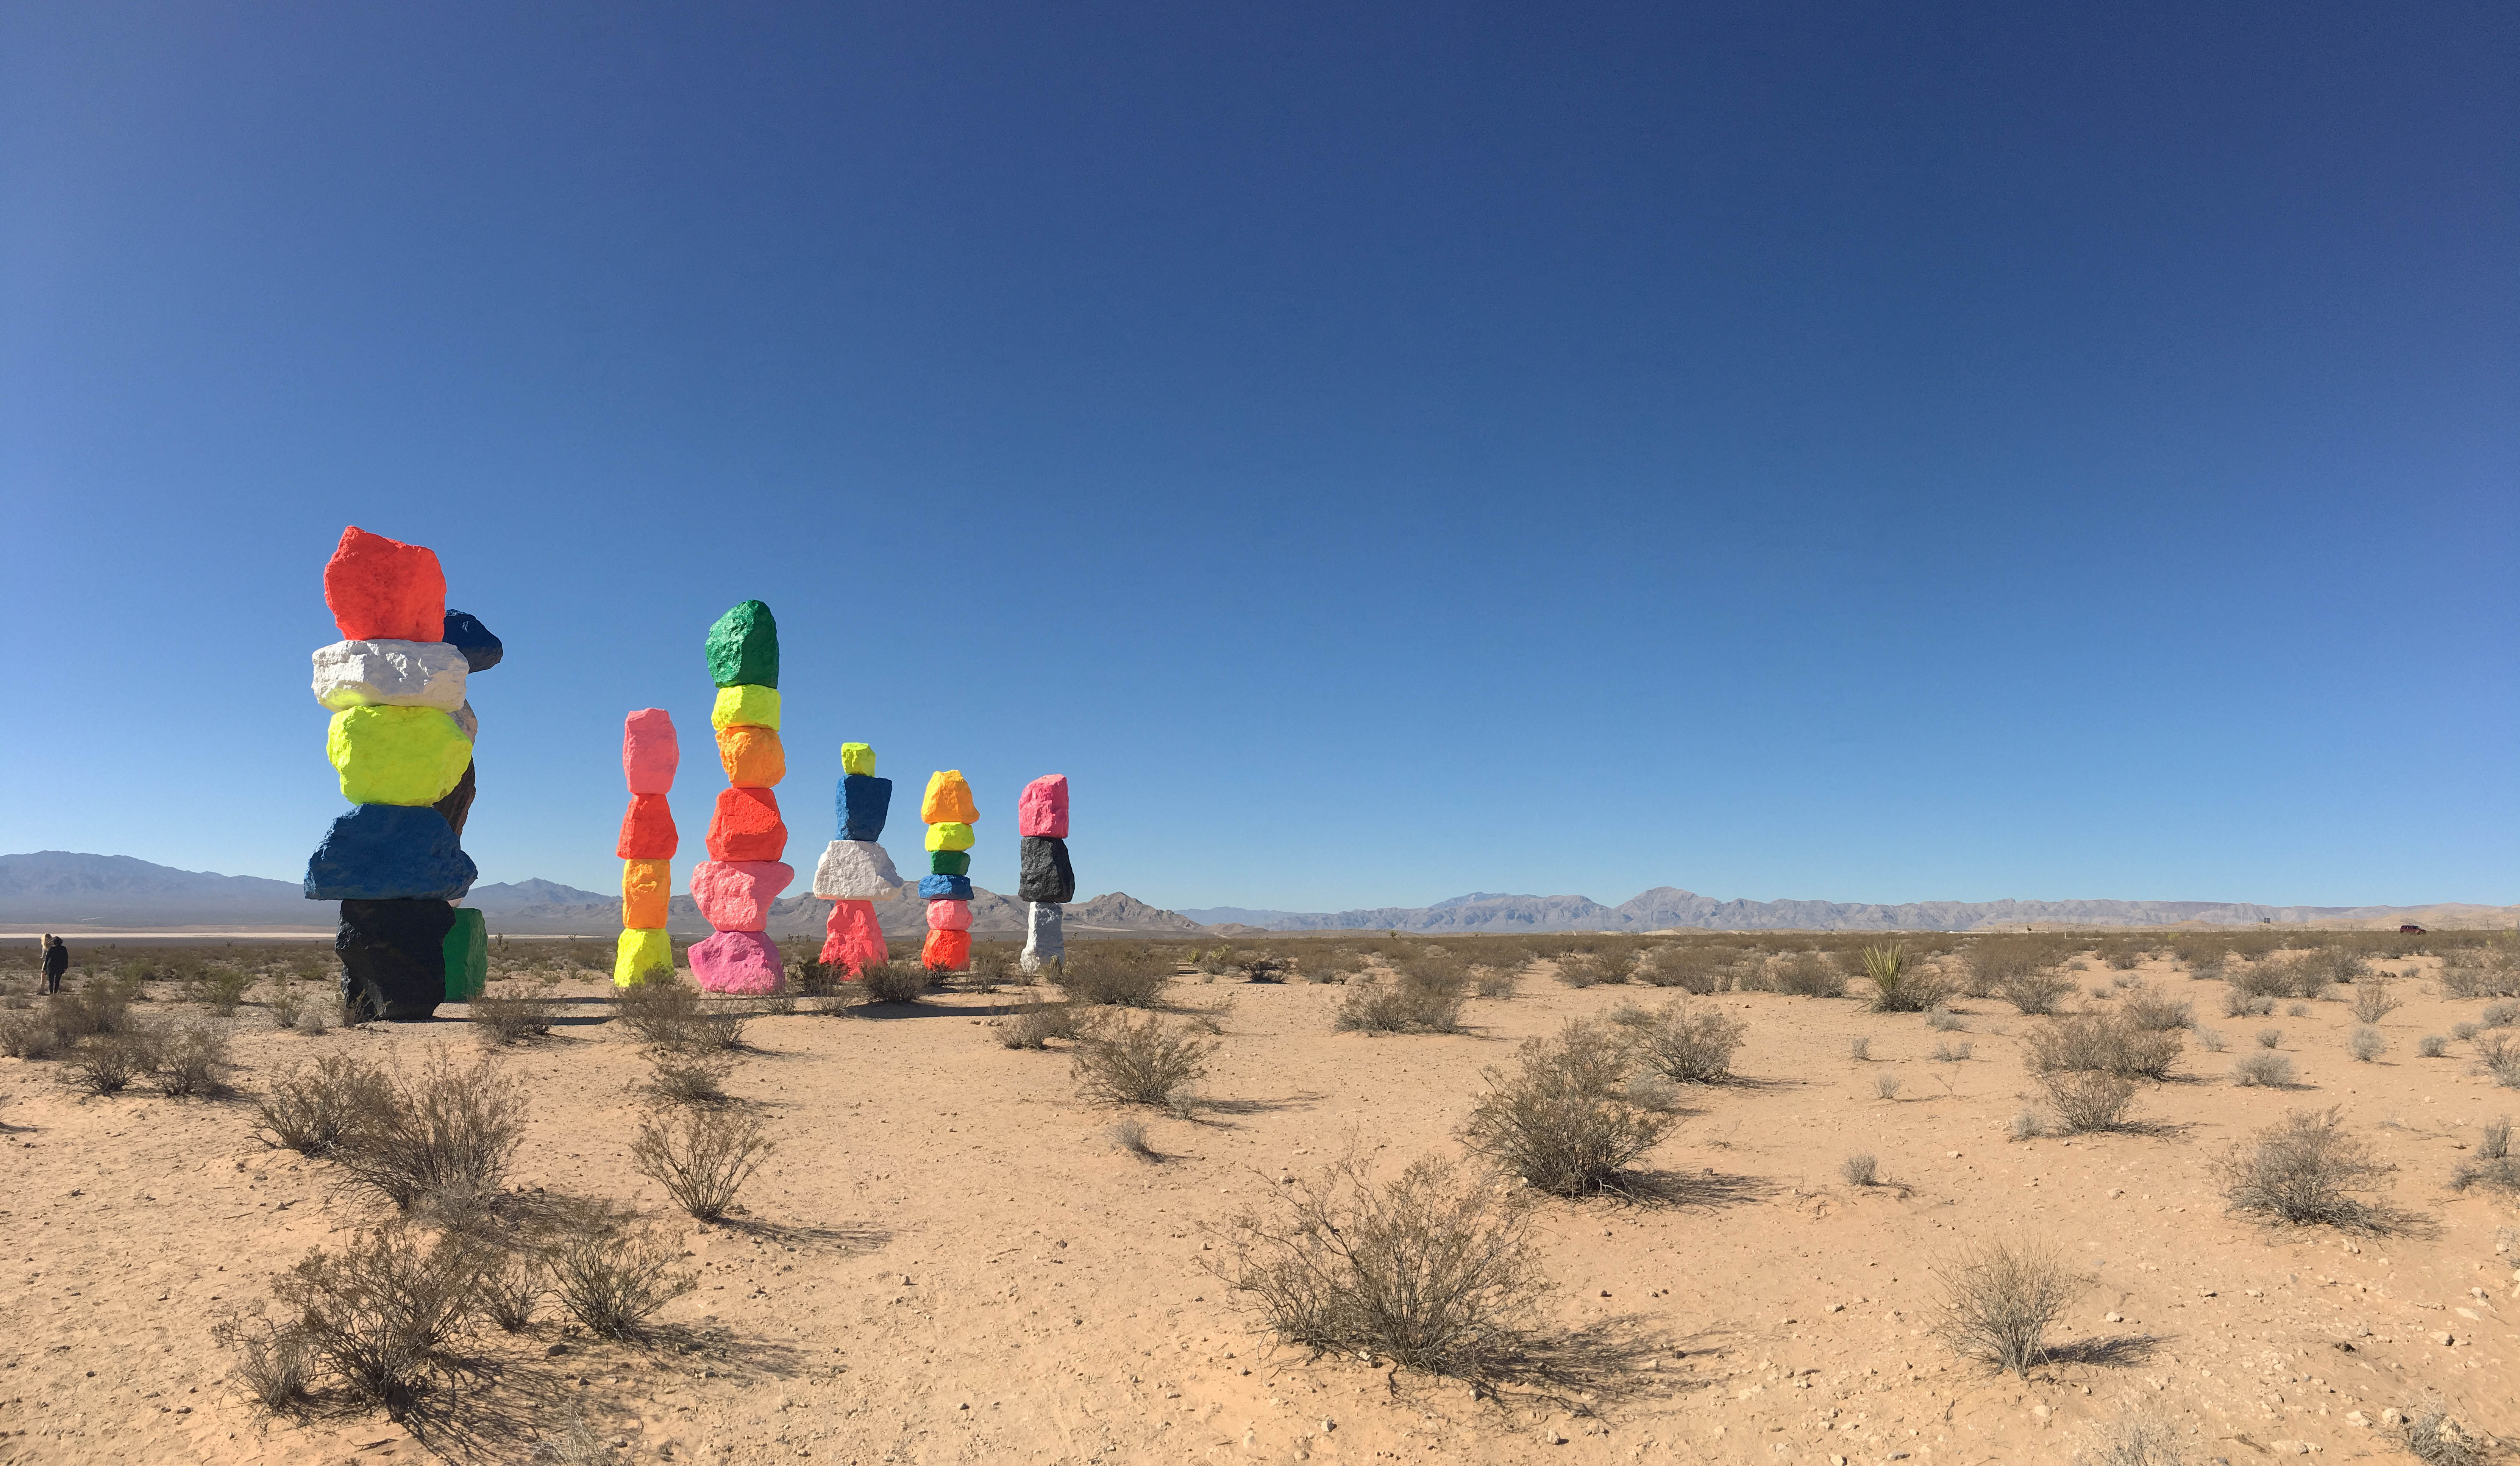 stacked neon boulders sculpture in the desert